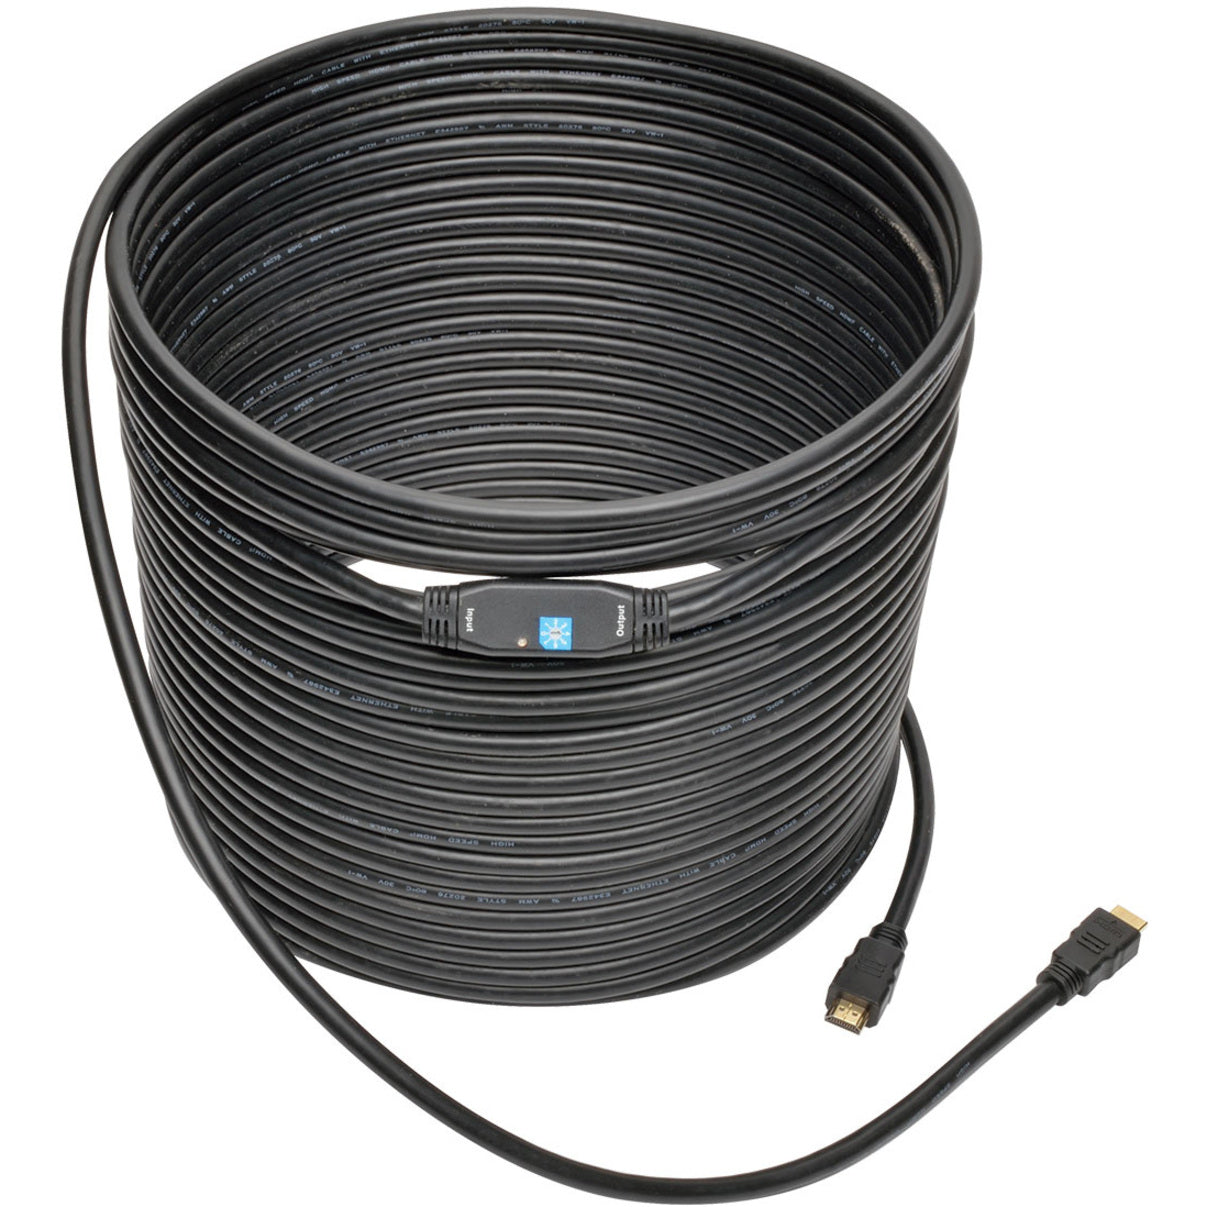 Cable de A/V HDMI Tripp Lite P568-080-ACT Activo de Alta Velocidad 80 pies Negro. Marca: Tripp Lite.